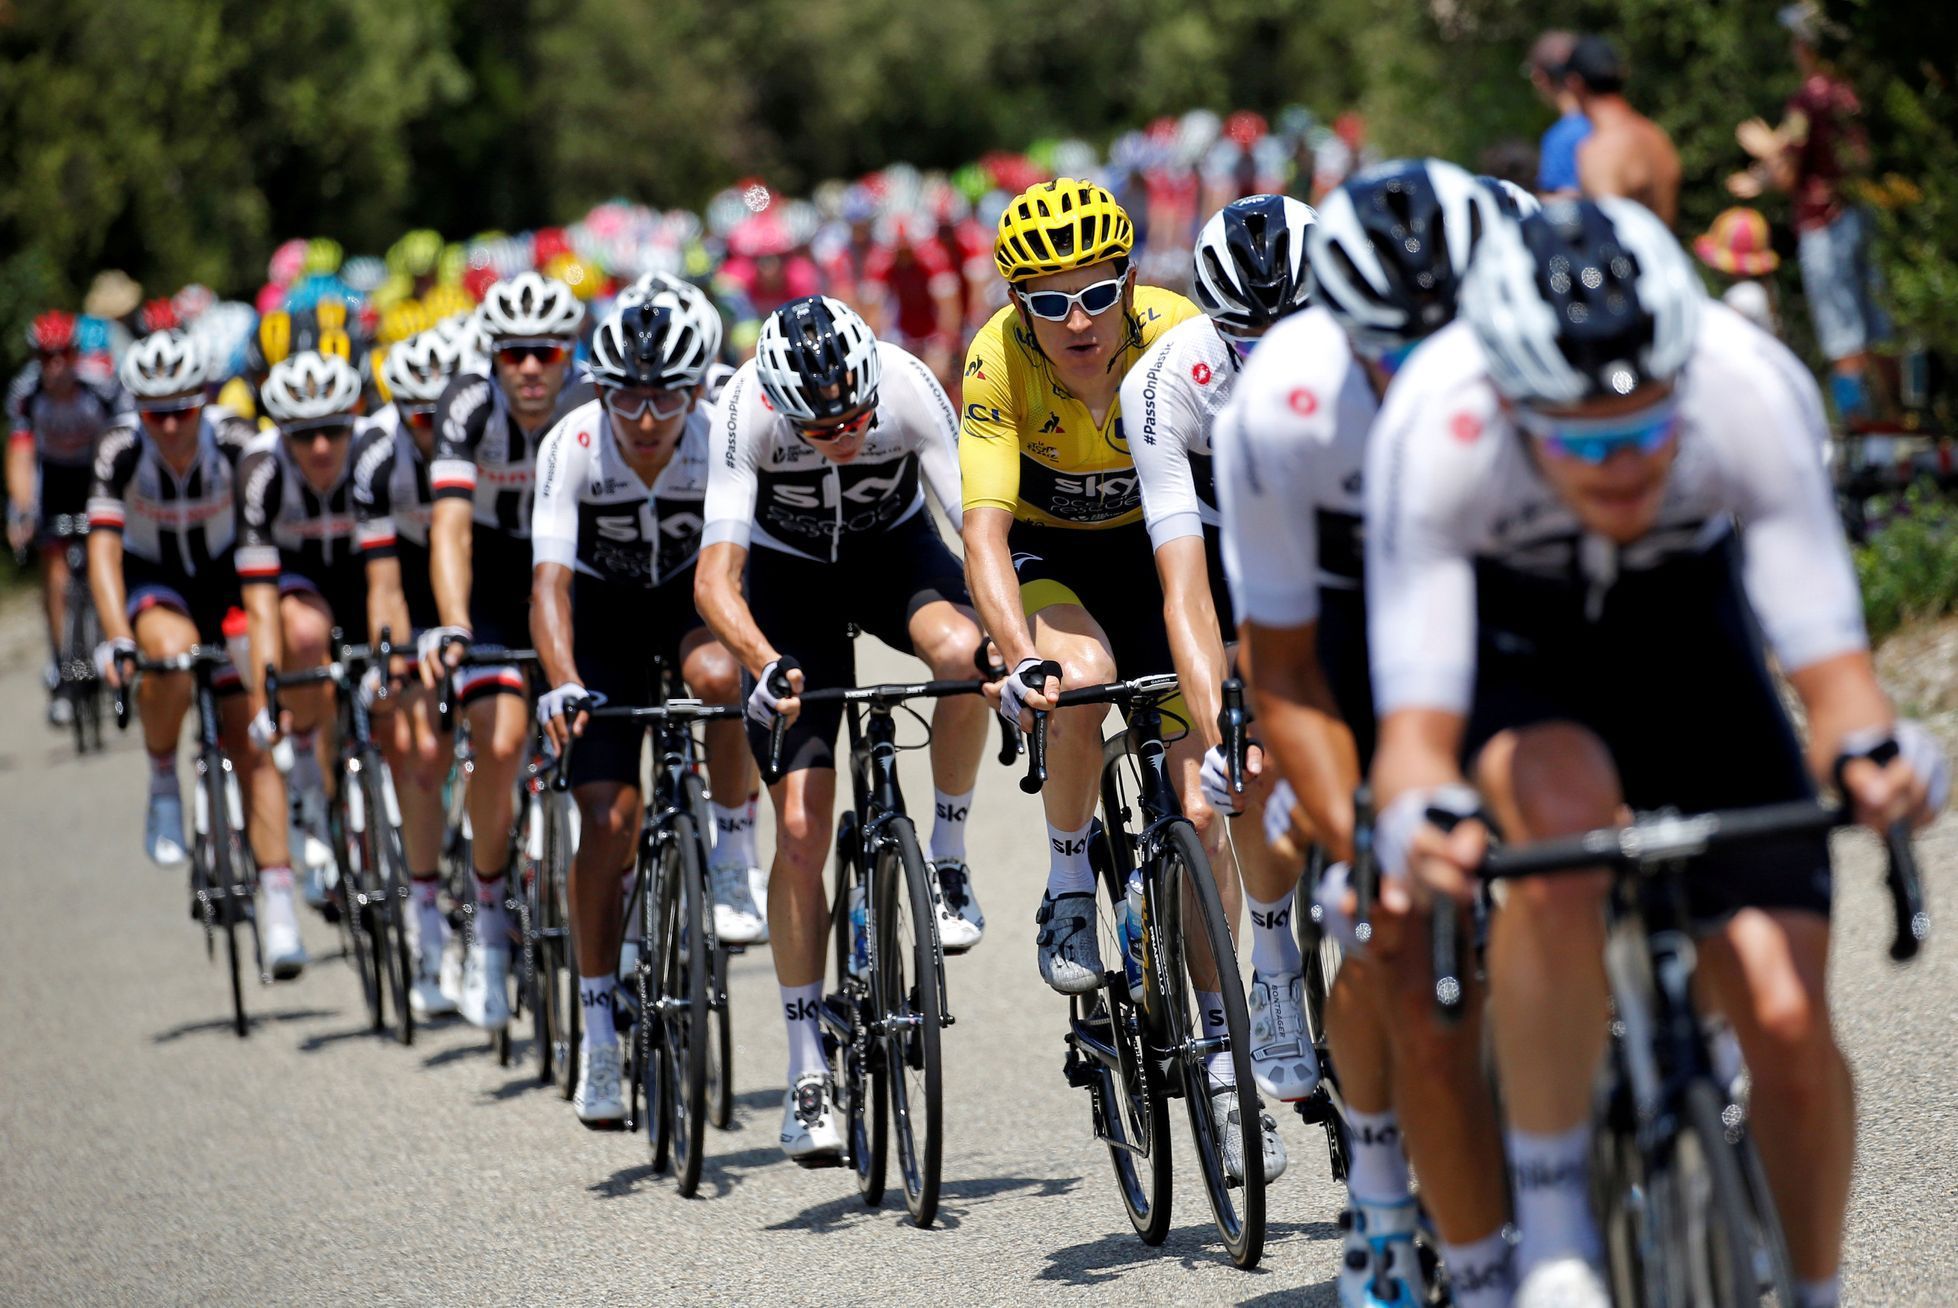 Tým Sky (nyní Ineos) na Tour de France 2018, Geraint Thomas ve žlutém dresu